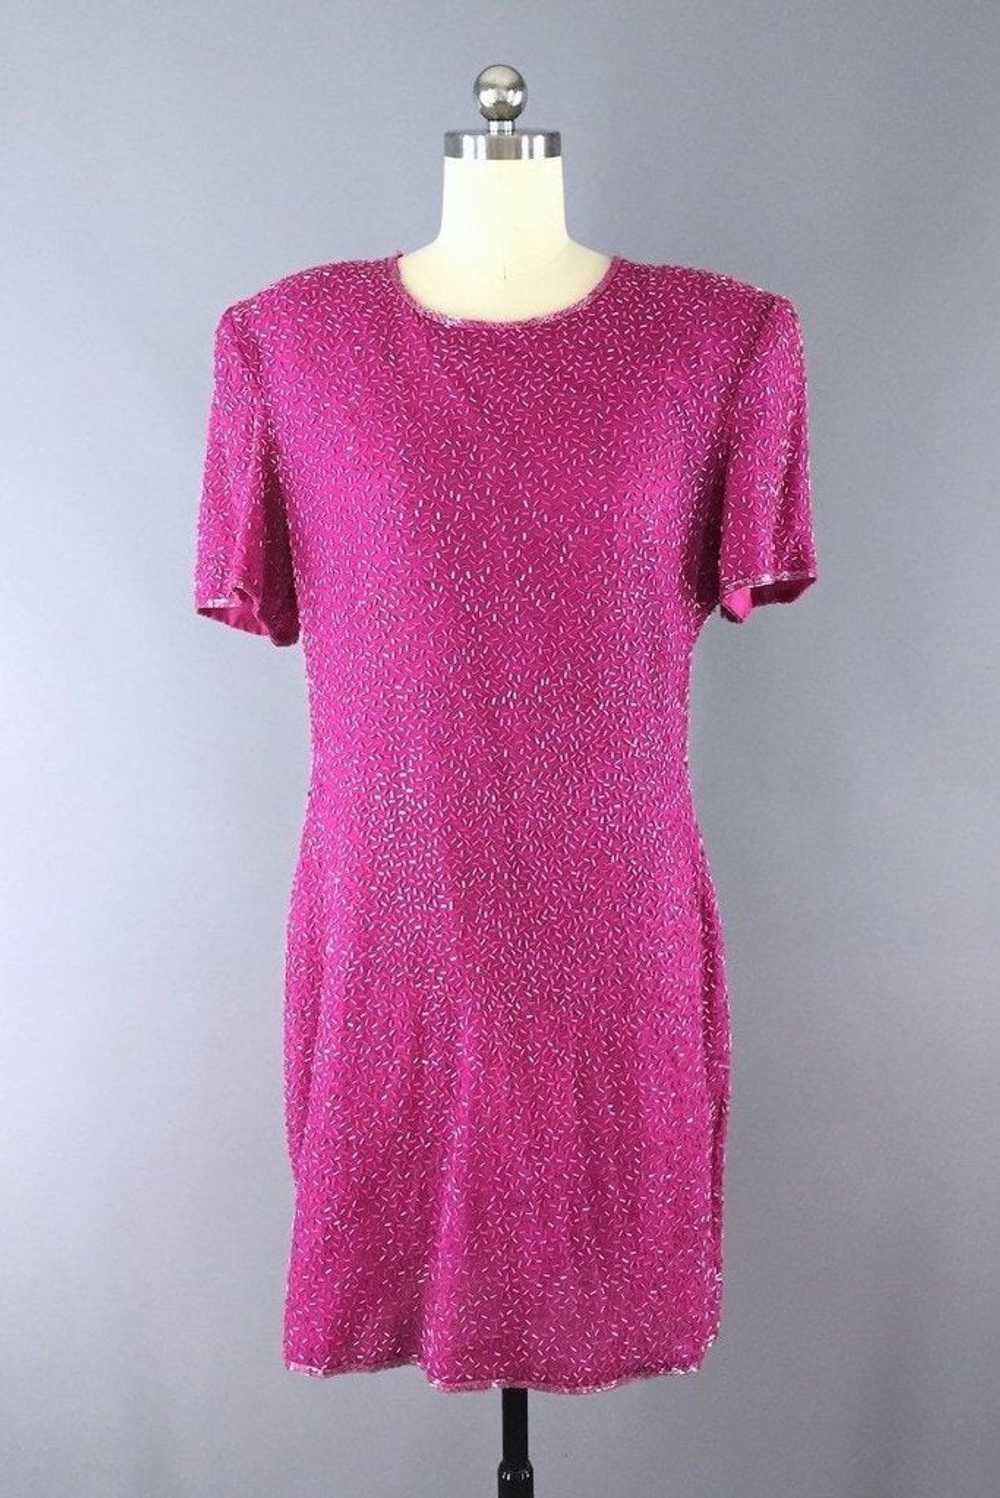 Vintage Hot Pink Beaded Dress - image 1